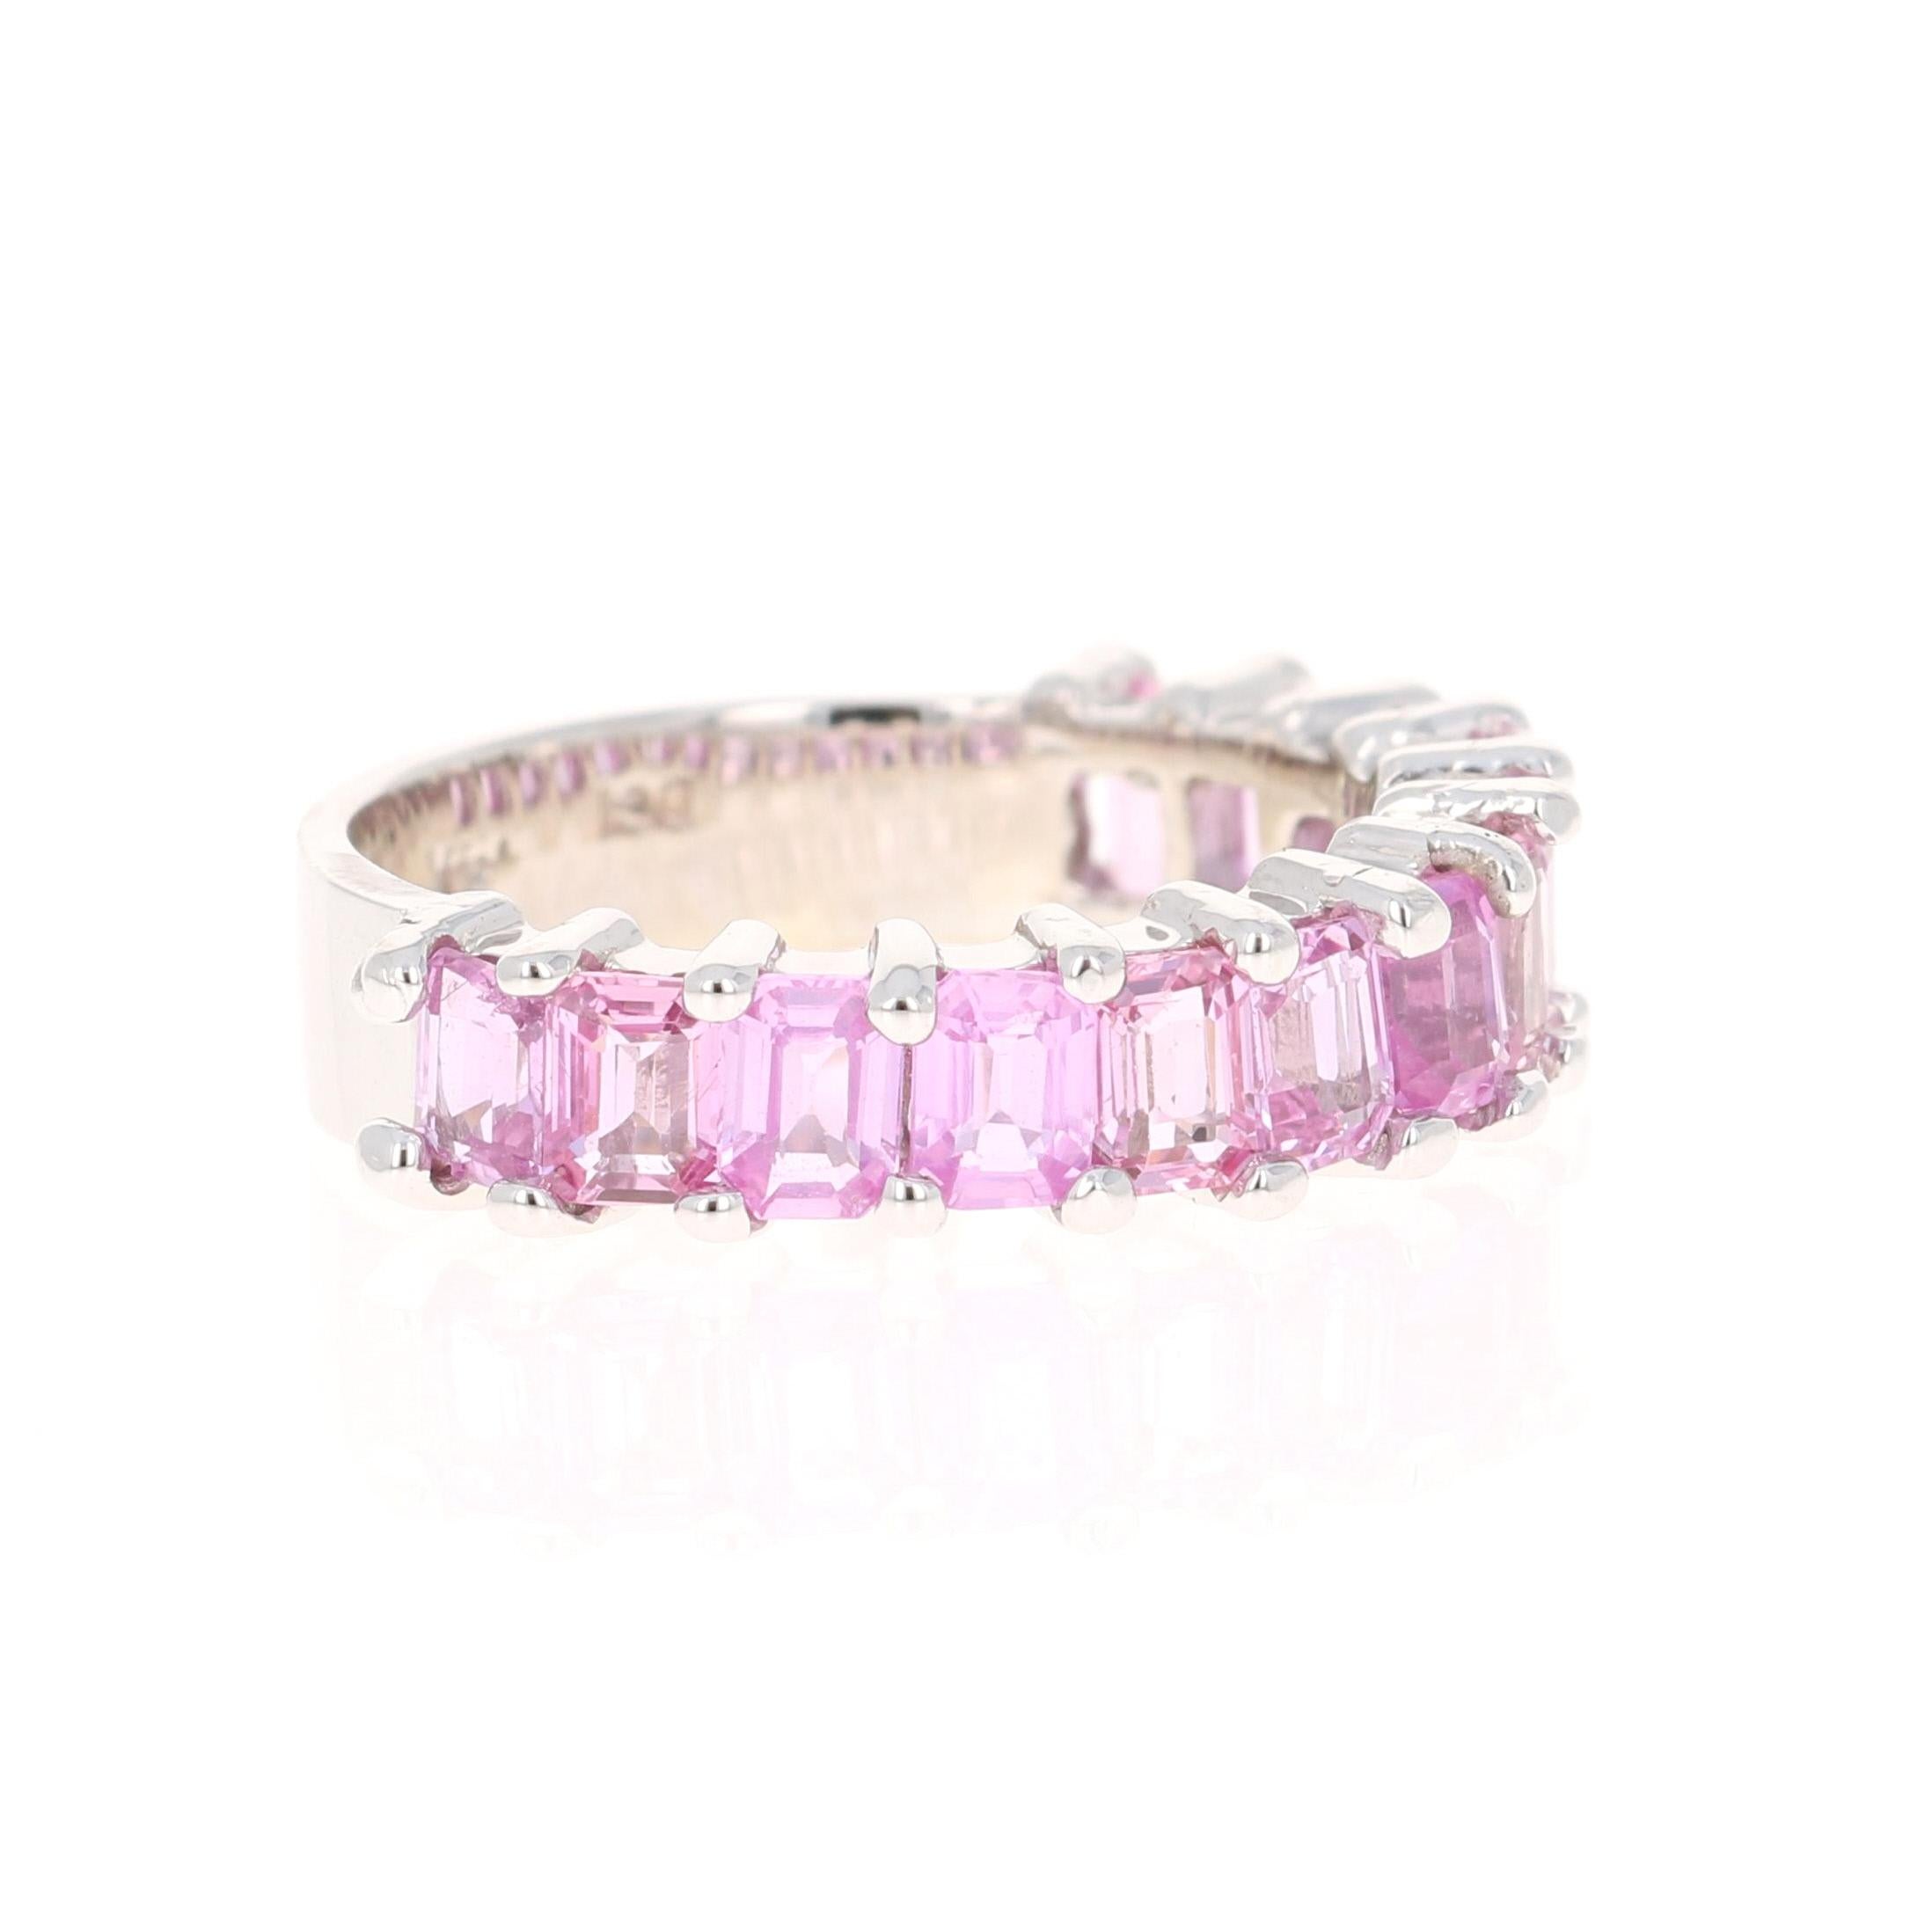 Dieser Ring hat 13 Smaragdschliff rosa Saphiren, die 3,44 Karat wiegt. 

Gefertigt aus 18 Karat Weißgold und wiegt ca. 4,8 Gramm 

Der Ring hat die Größe 7 und kann ohne Aufpreis in der Größe verändert werden.